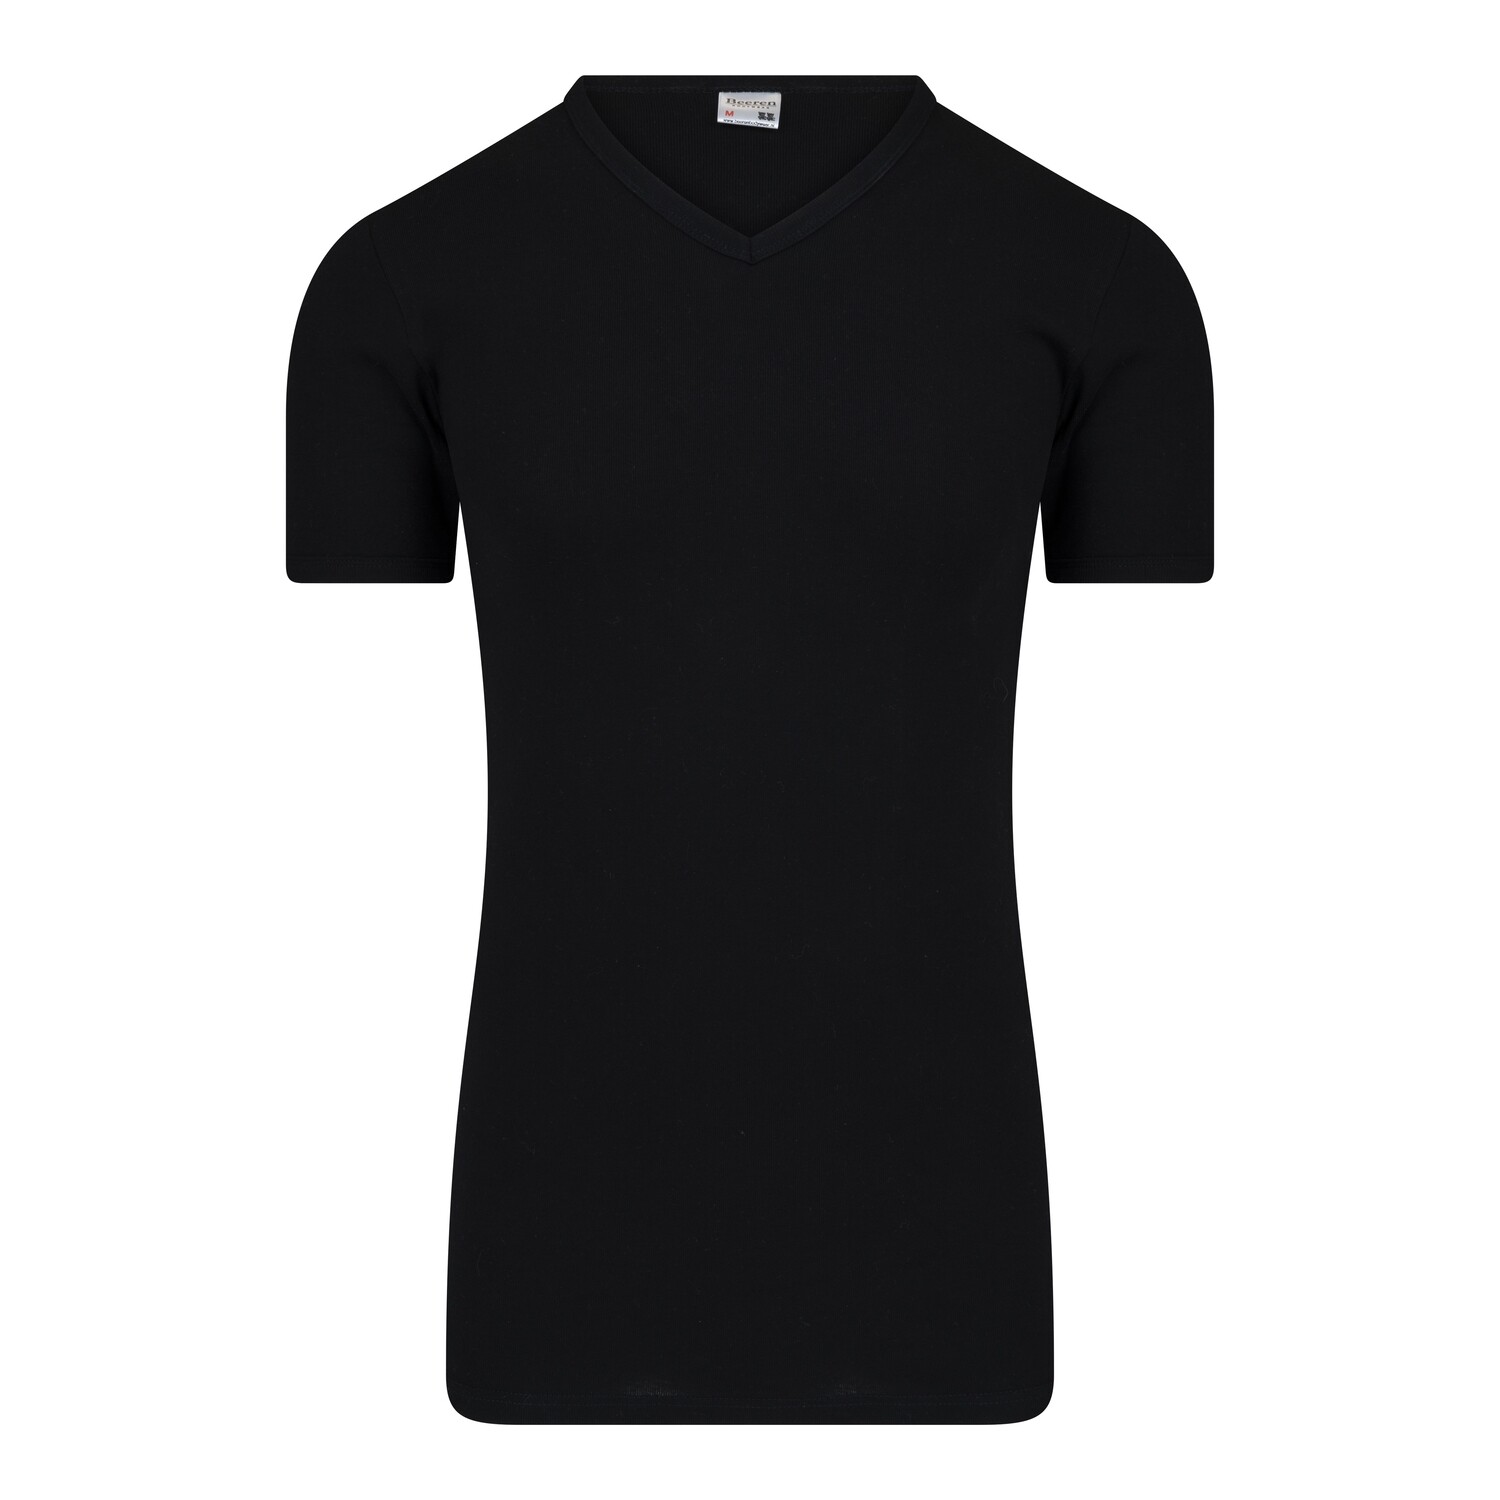 (11-537) Heren T-shirt R-hals M3000 extra lang zwart L